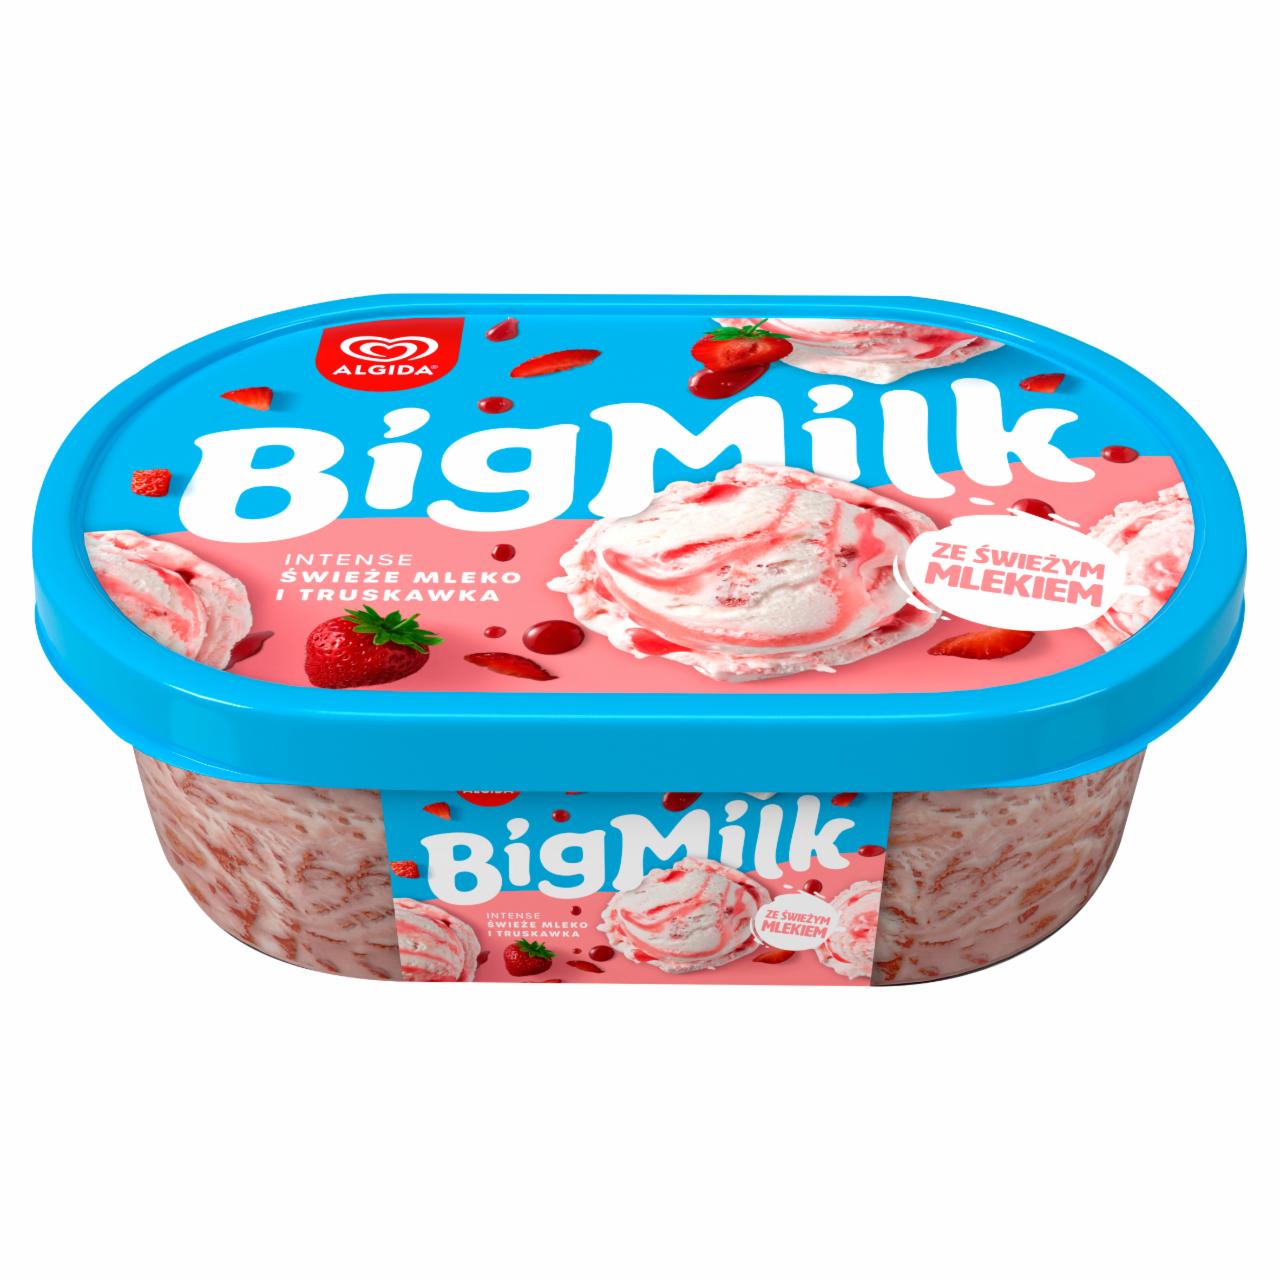 Zdjęcia - Big Milk Intense Lody świeże mleko i truskawki 1000 ml